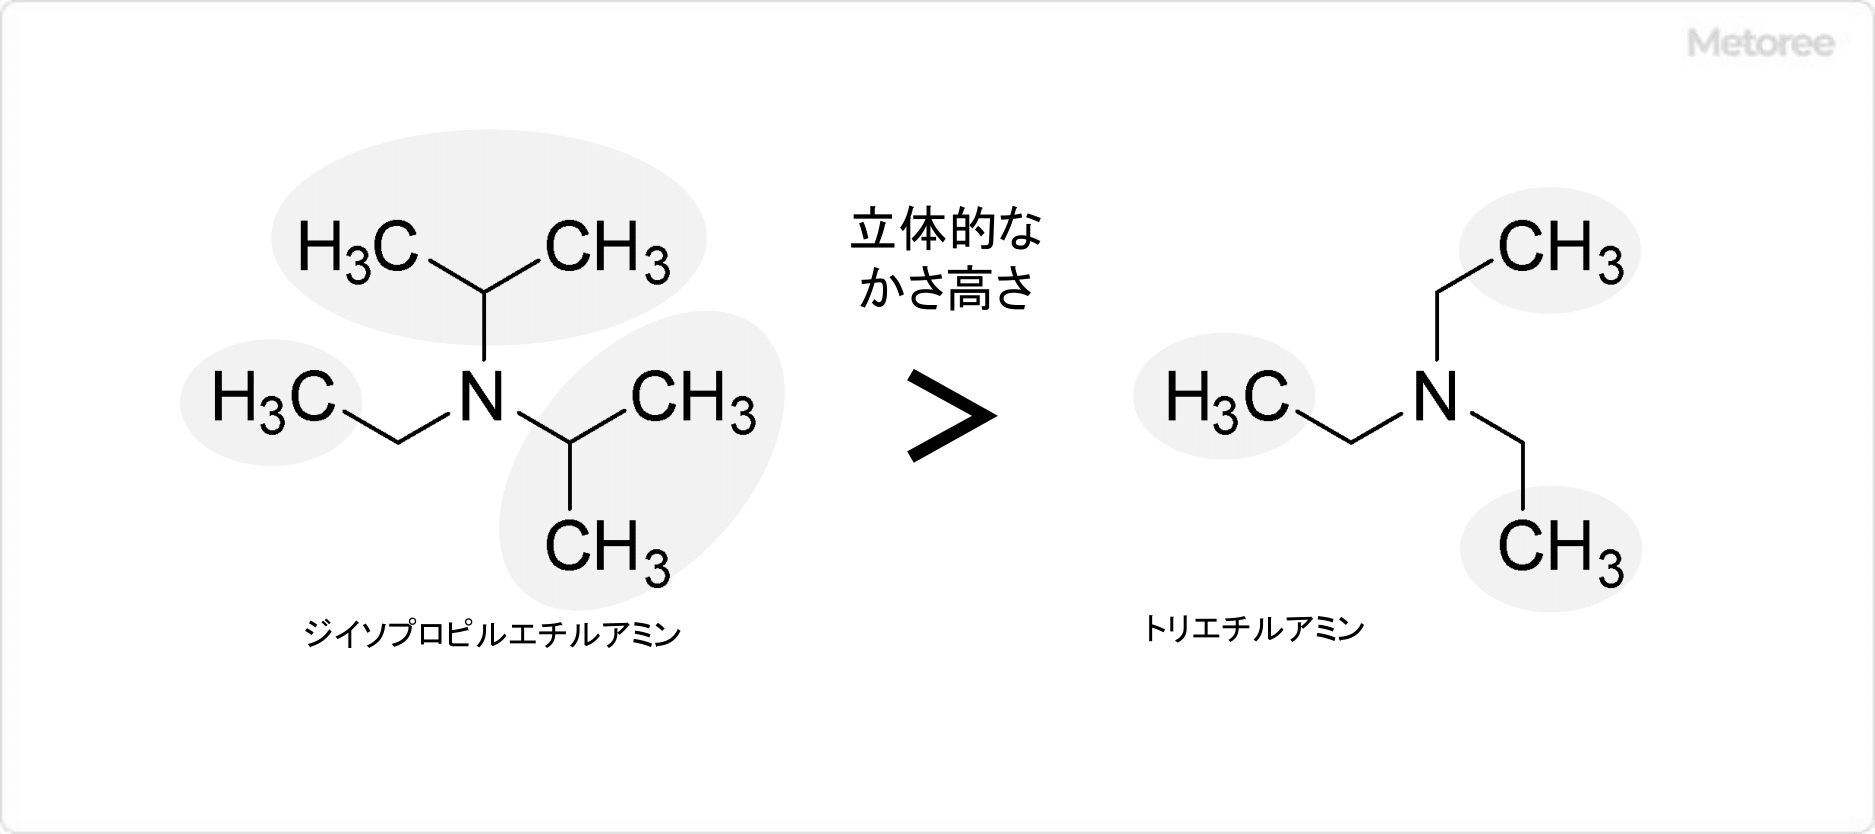 ジイソプロピルエチルアミンとトリエチルアミンの構造比較